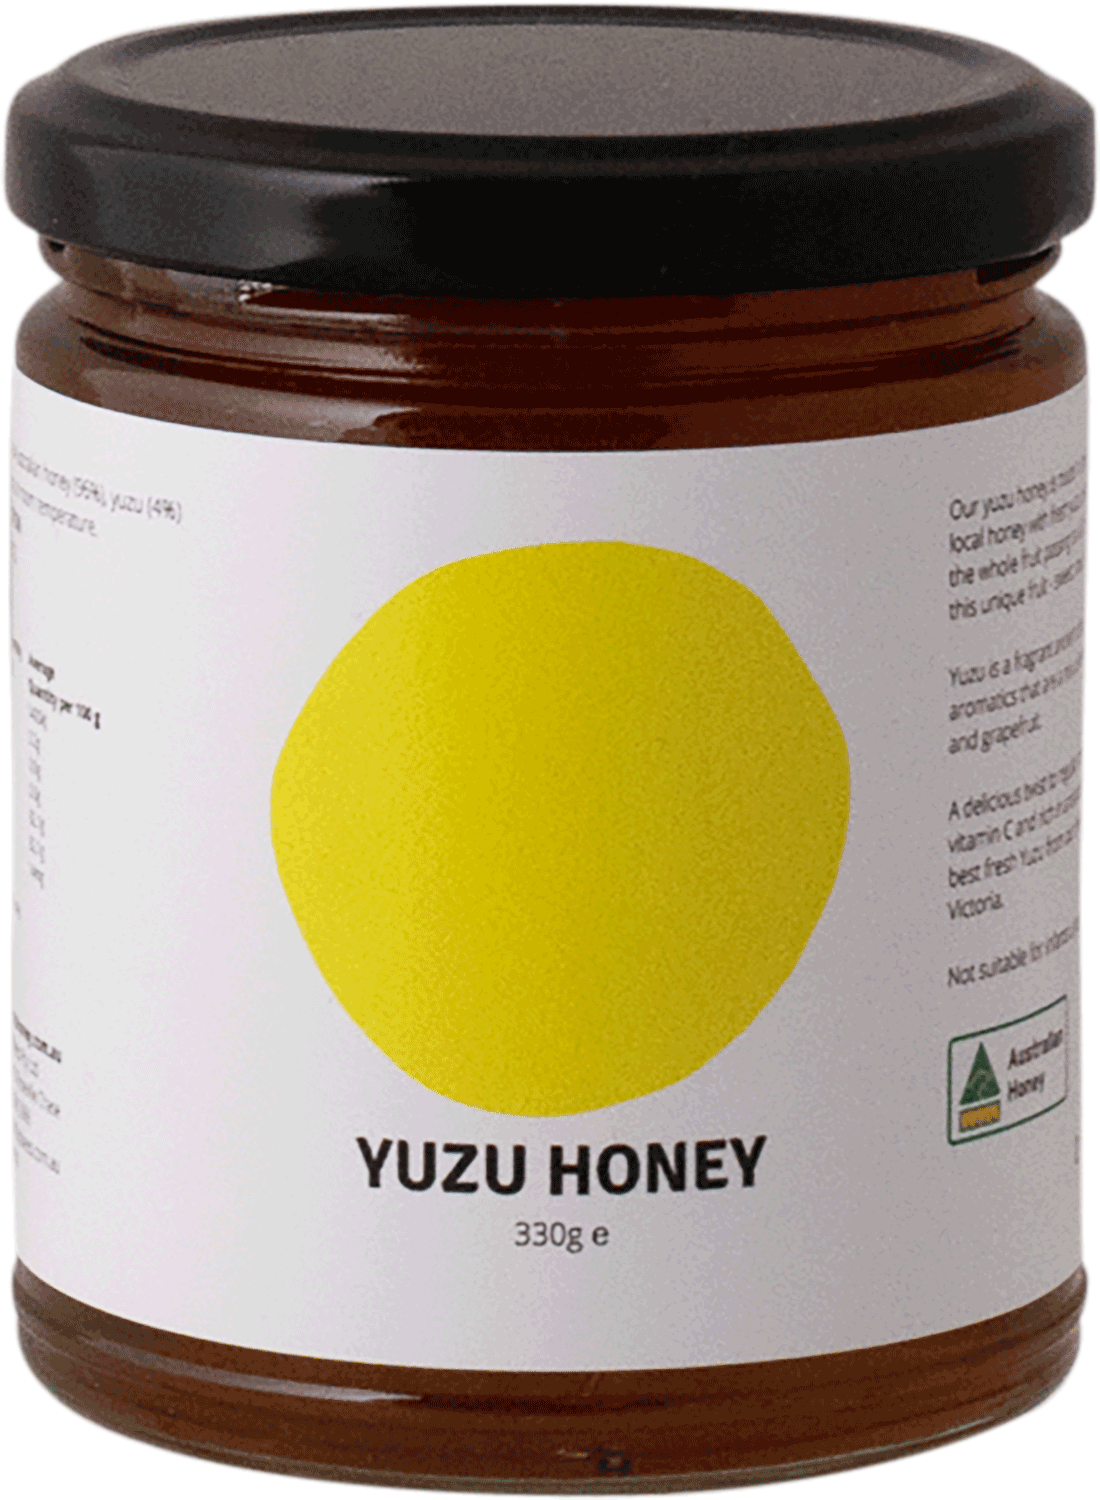 Rooftop Bees - Yuzu Honey